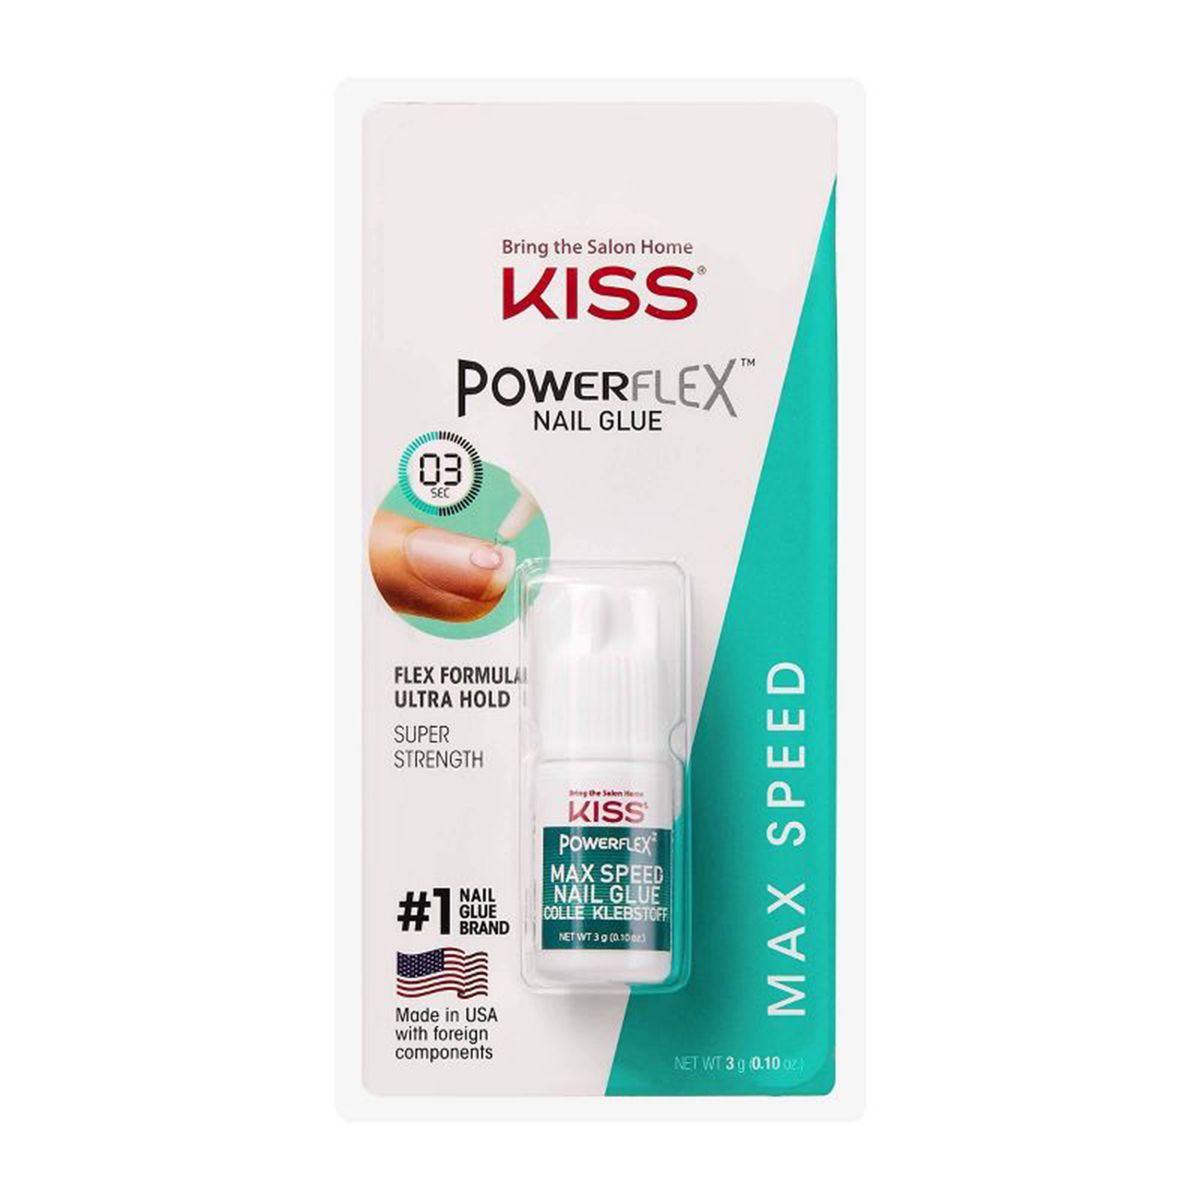 Kiss PowerFlex Maximum Speed Nail Glue